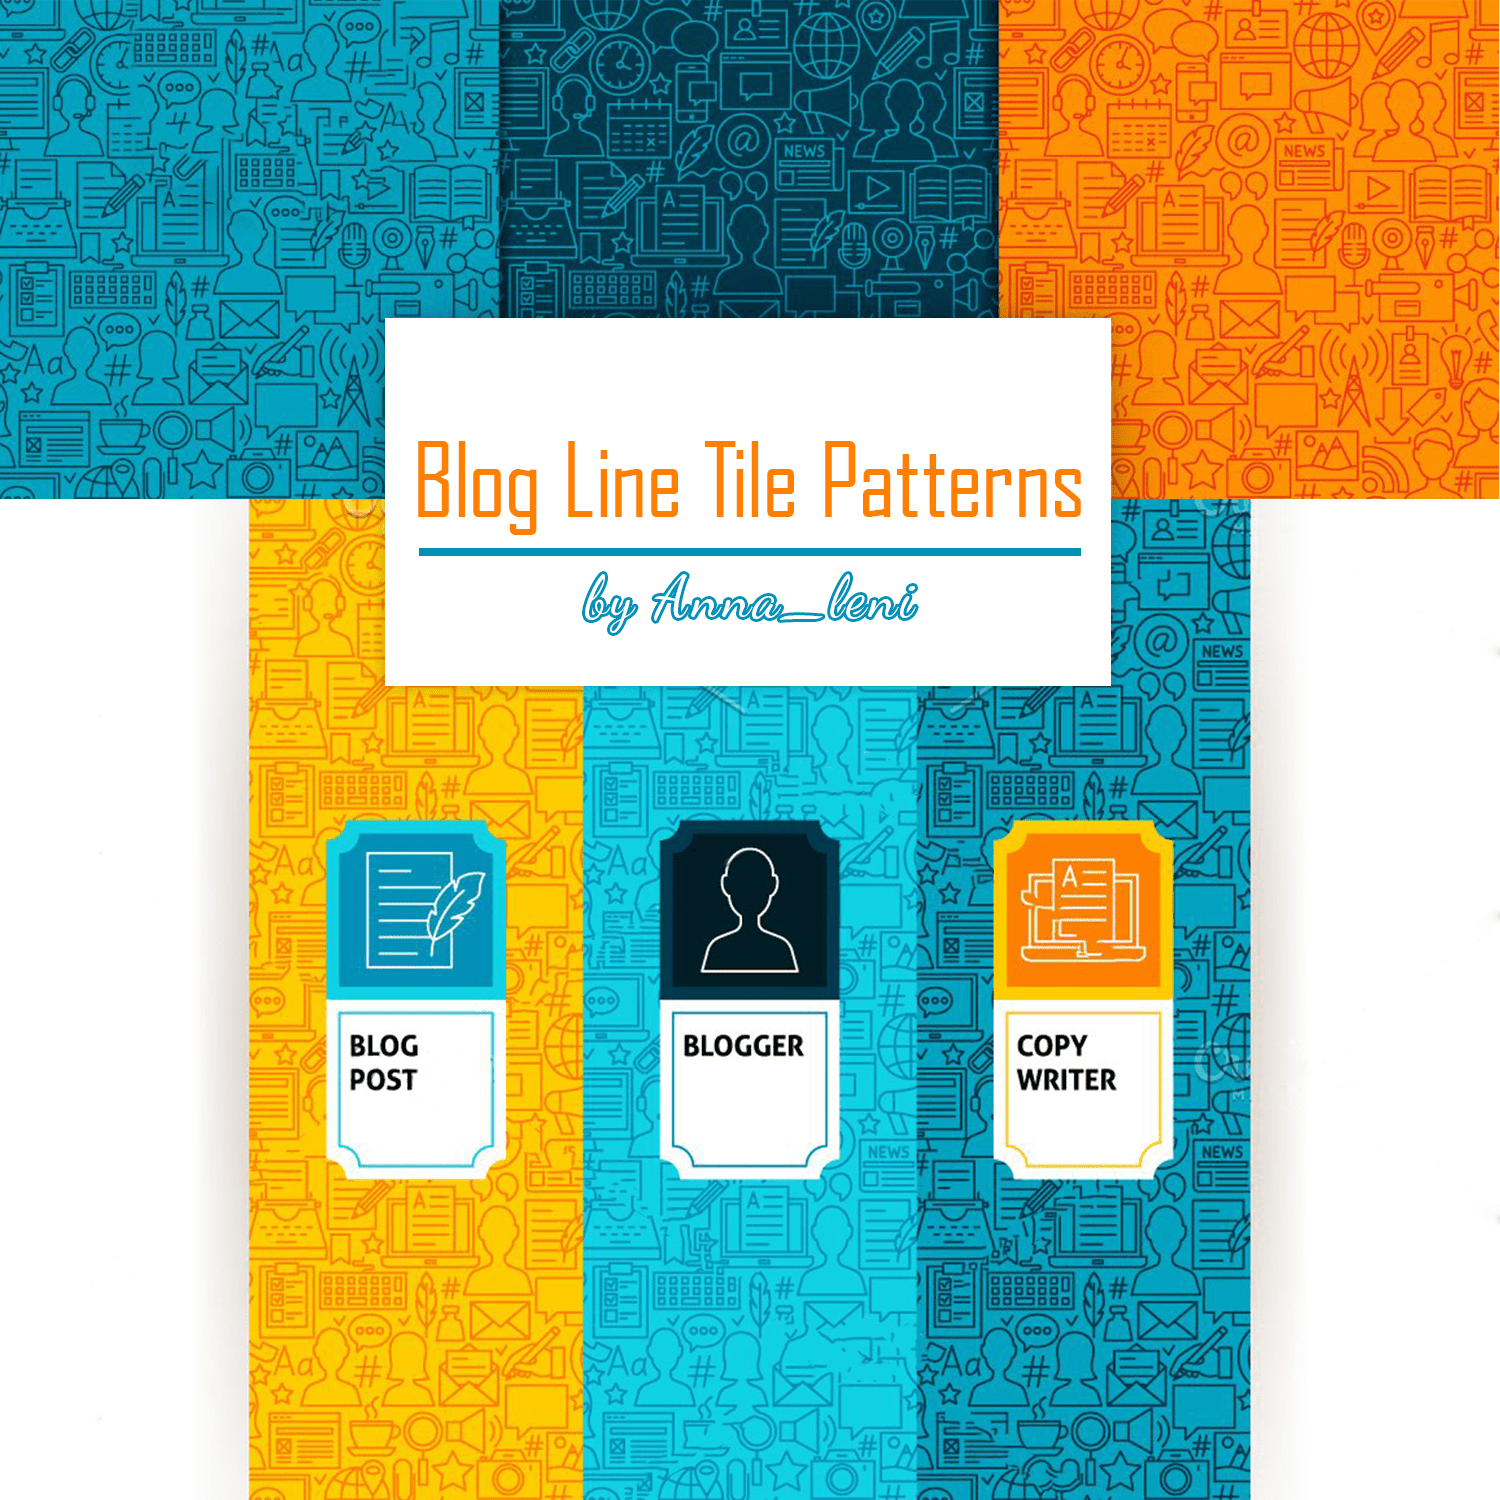 Blog Line Tile Patterns cover.